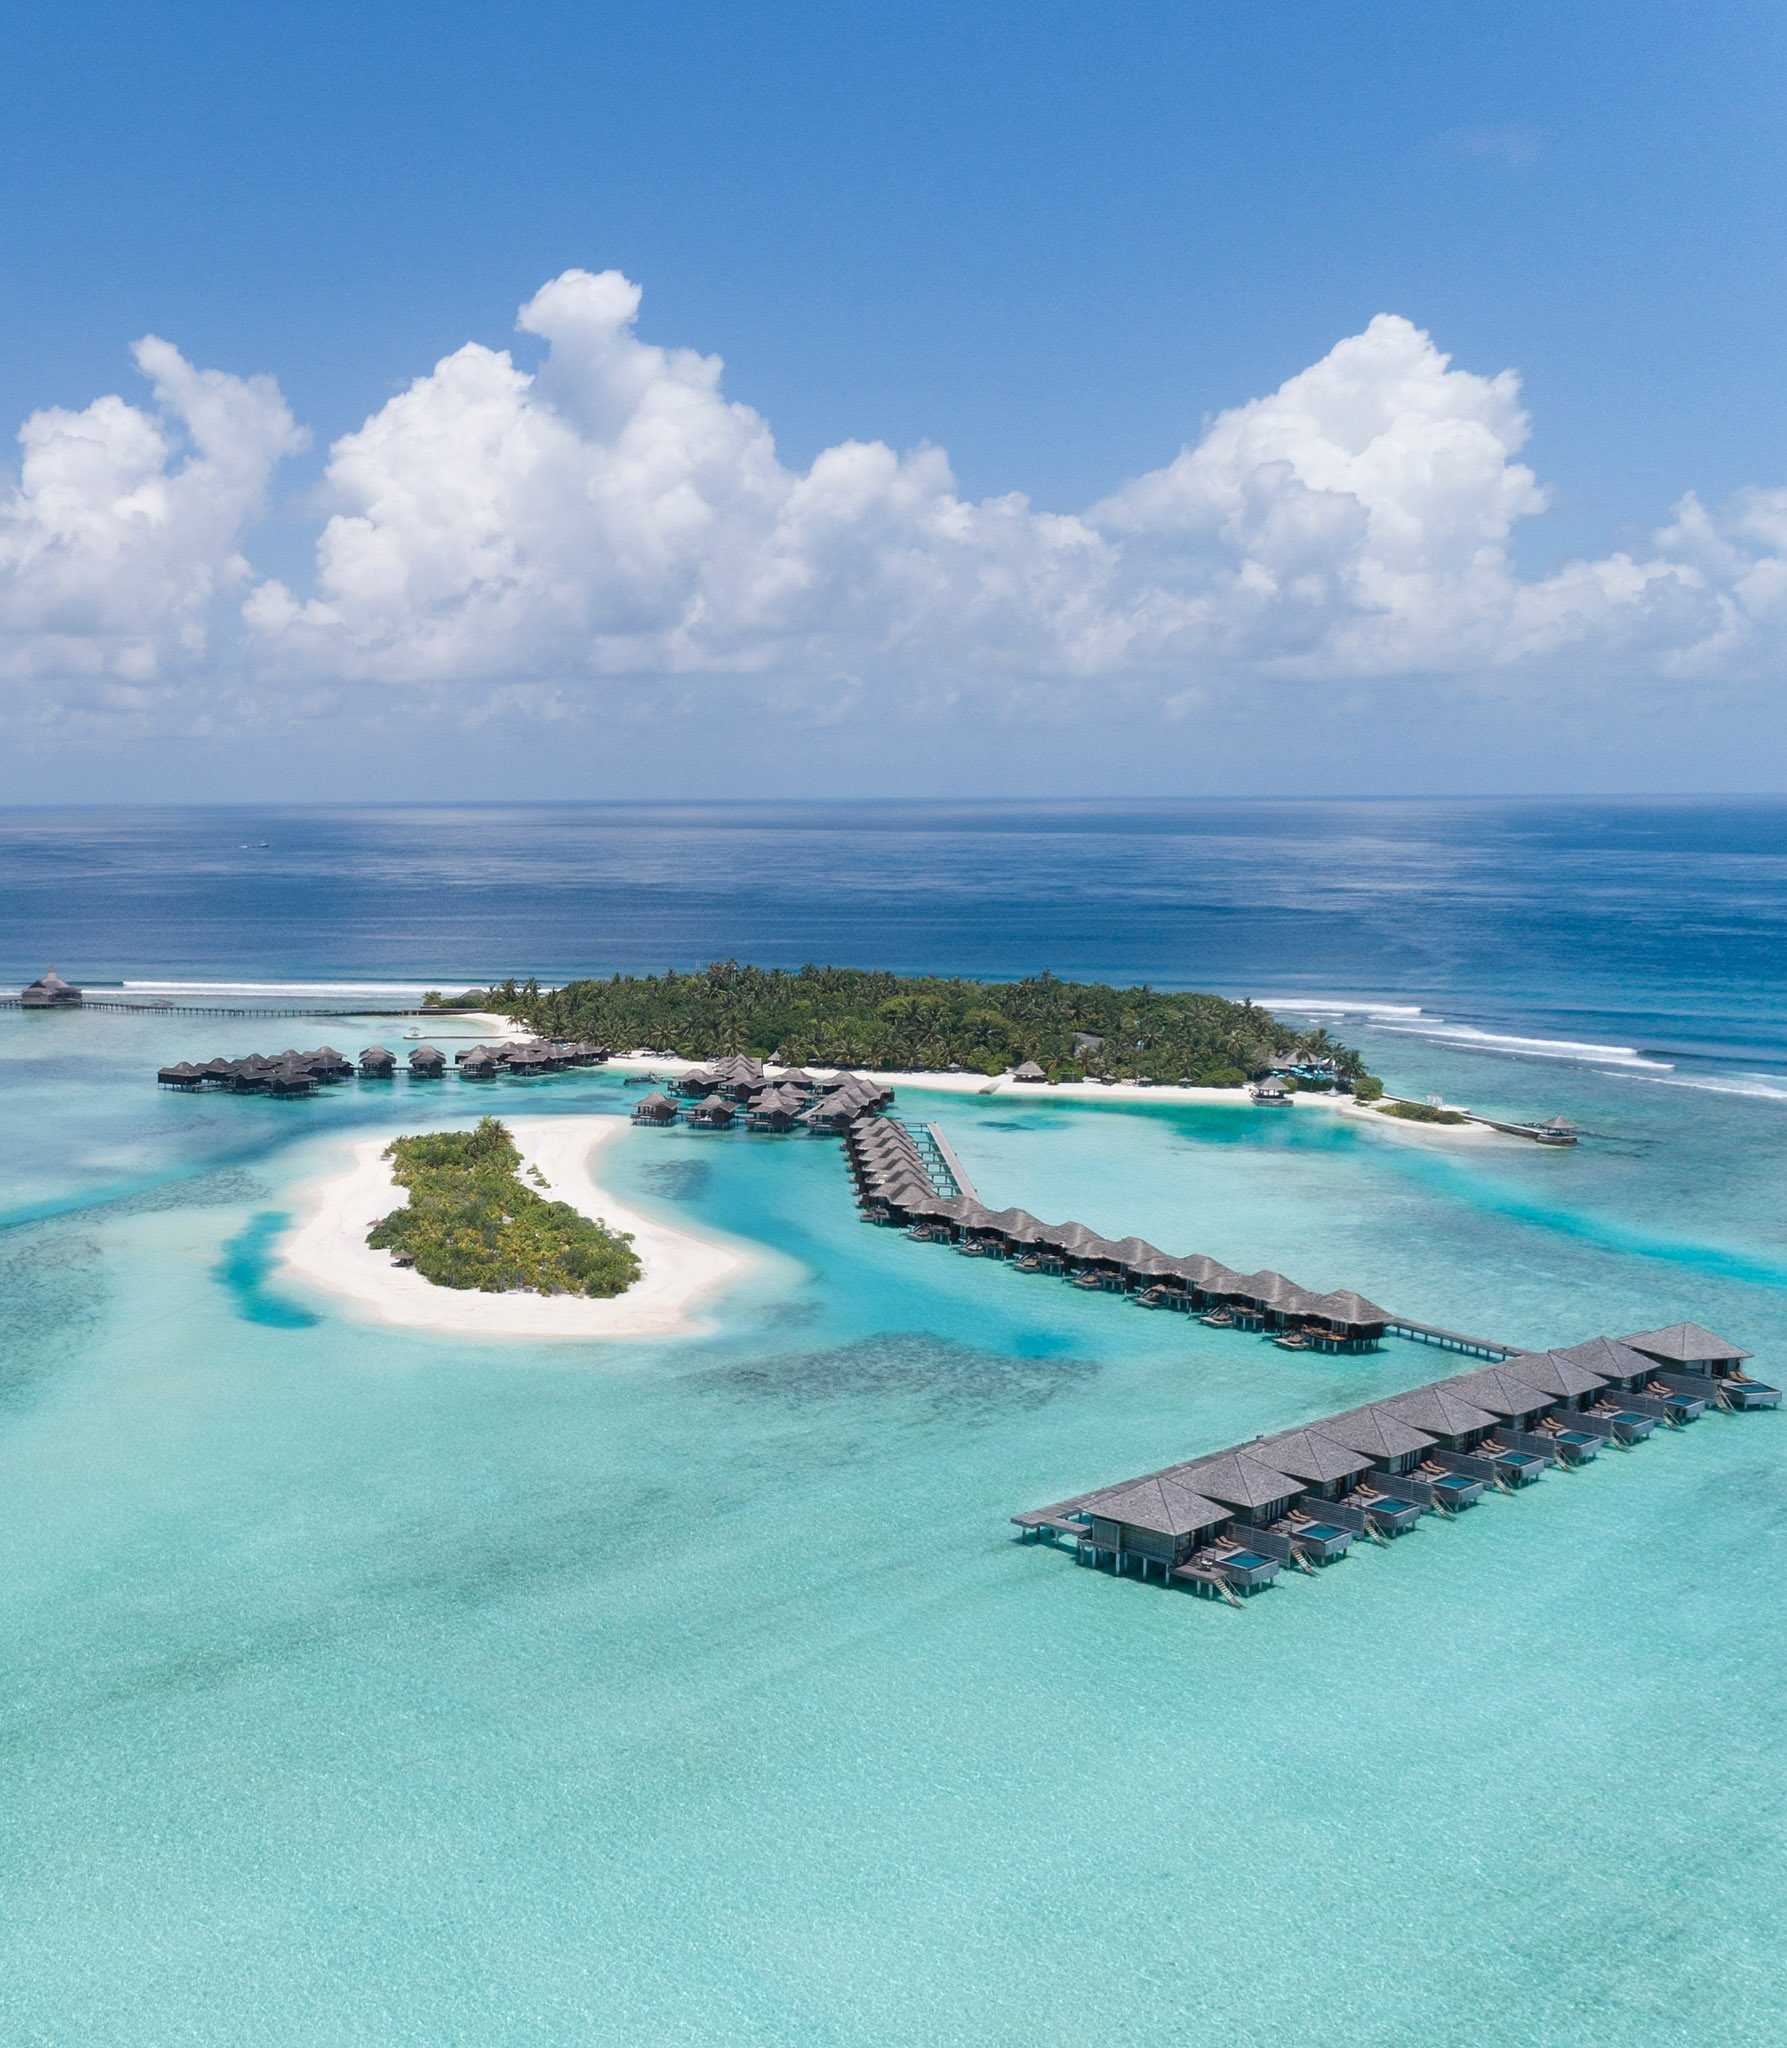 Anantara Veli Maldives Resort – South Male Atoll, Maldives – Aerial View